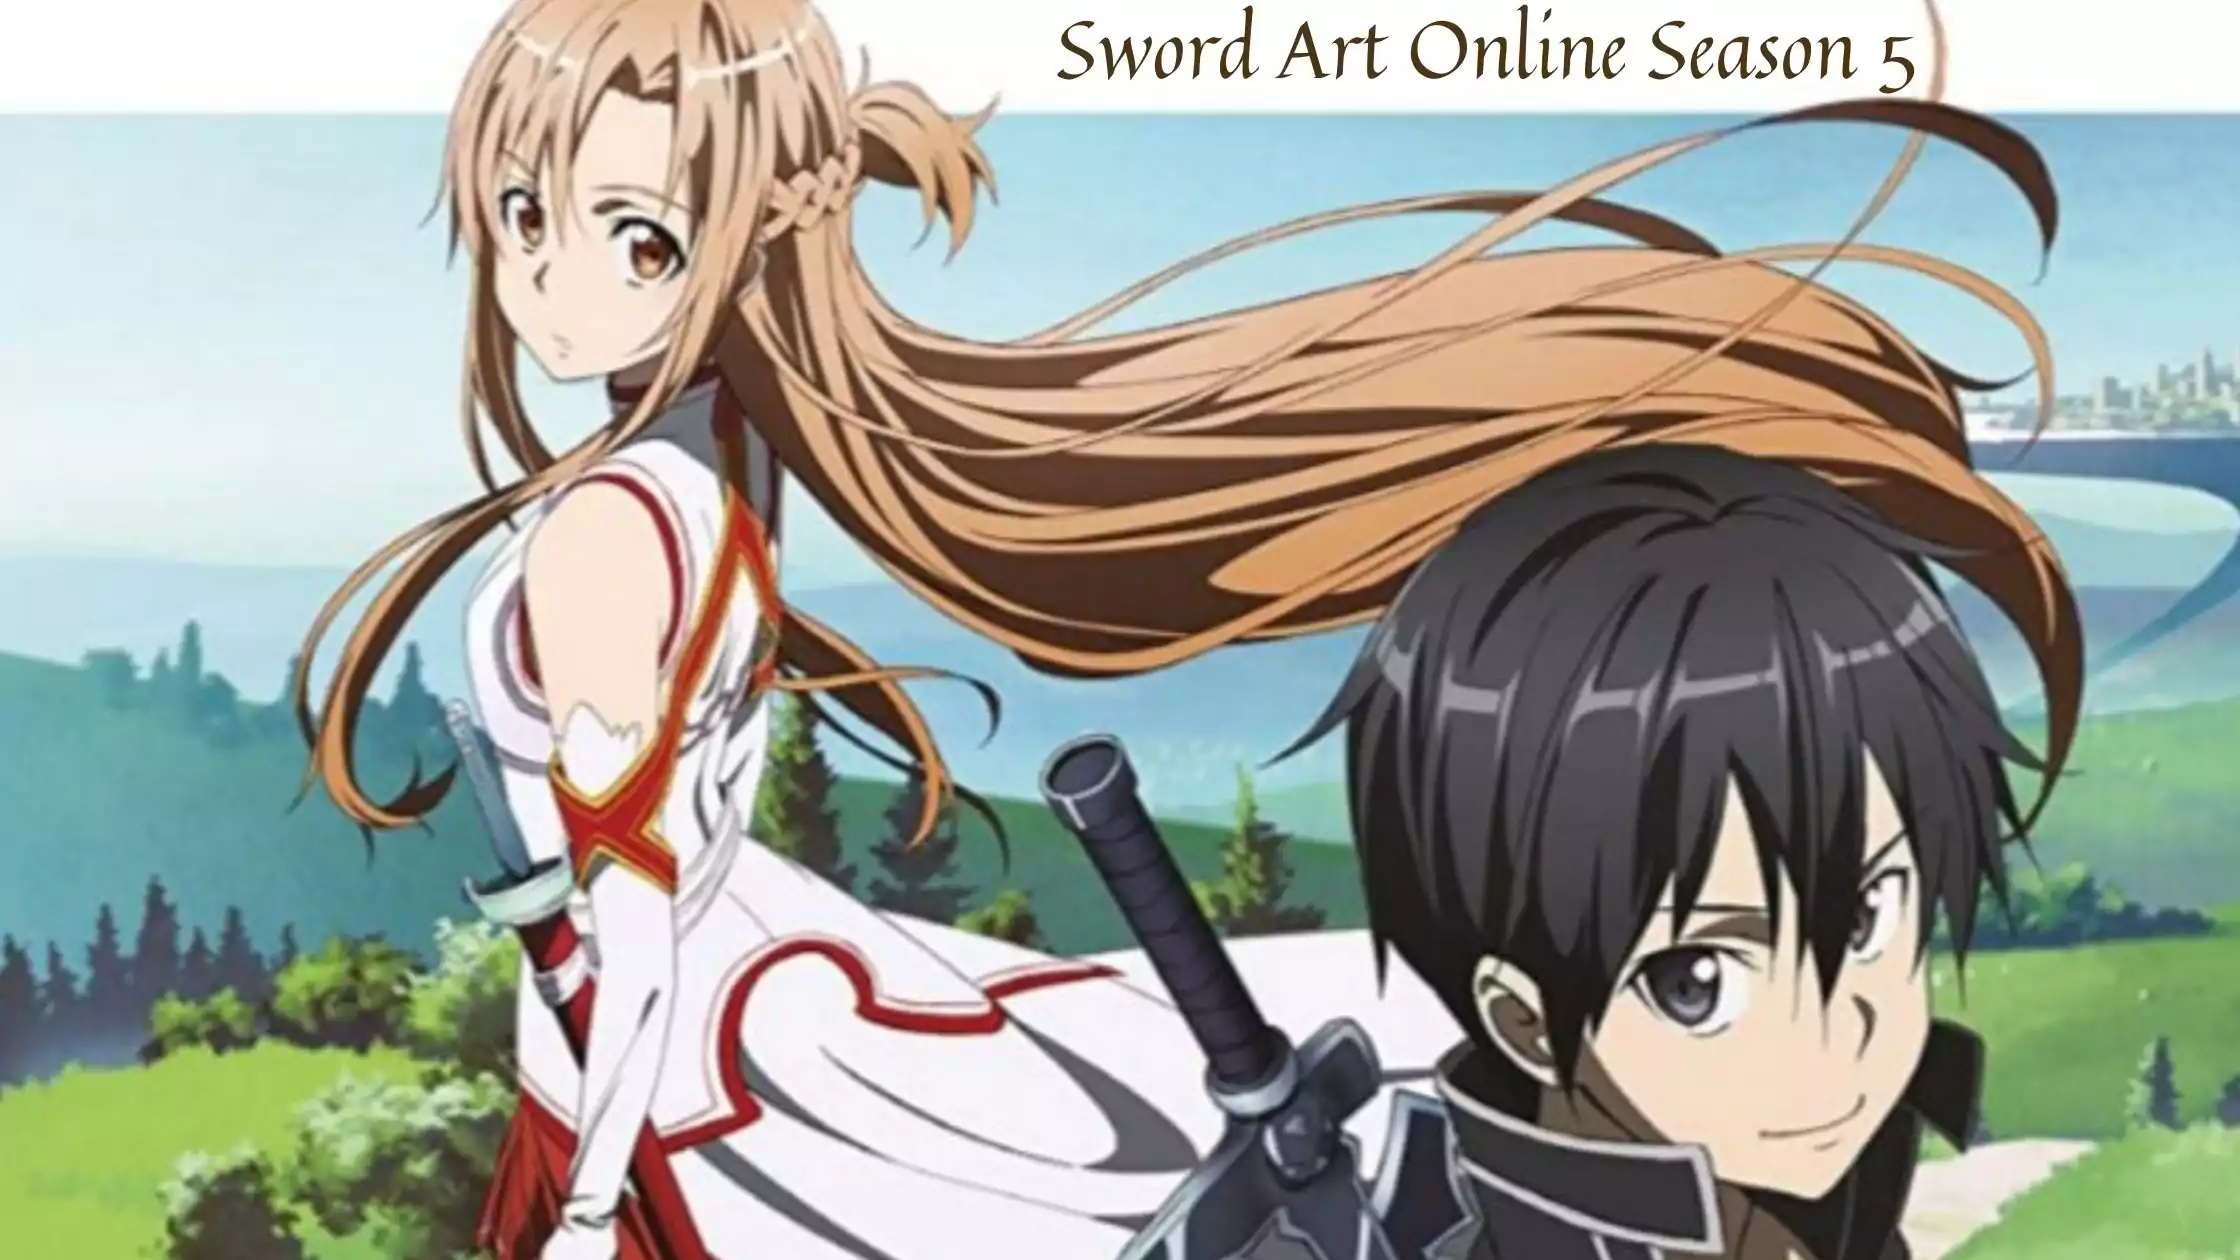 Sword Art Online Season 5 release date